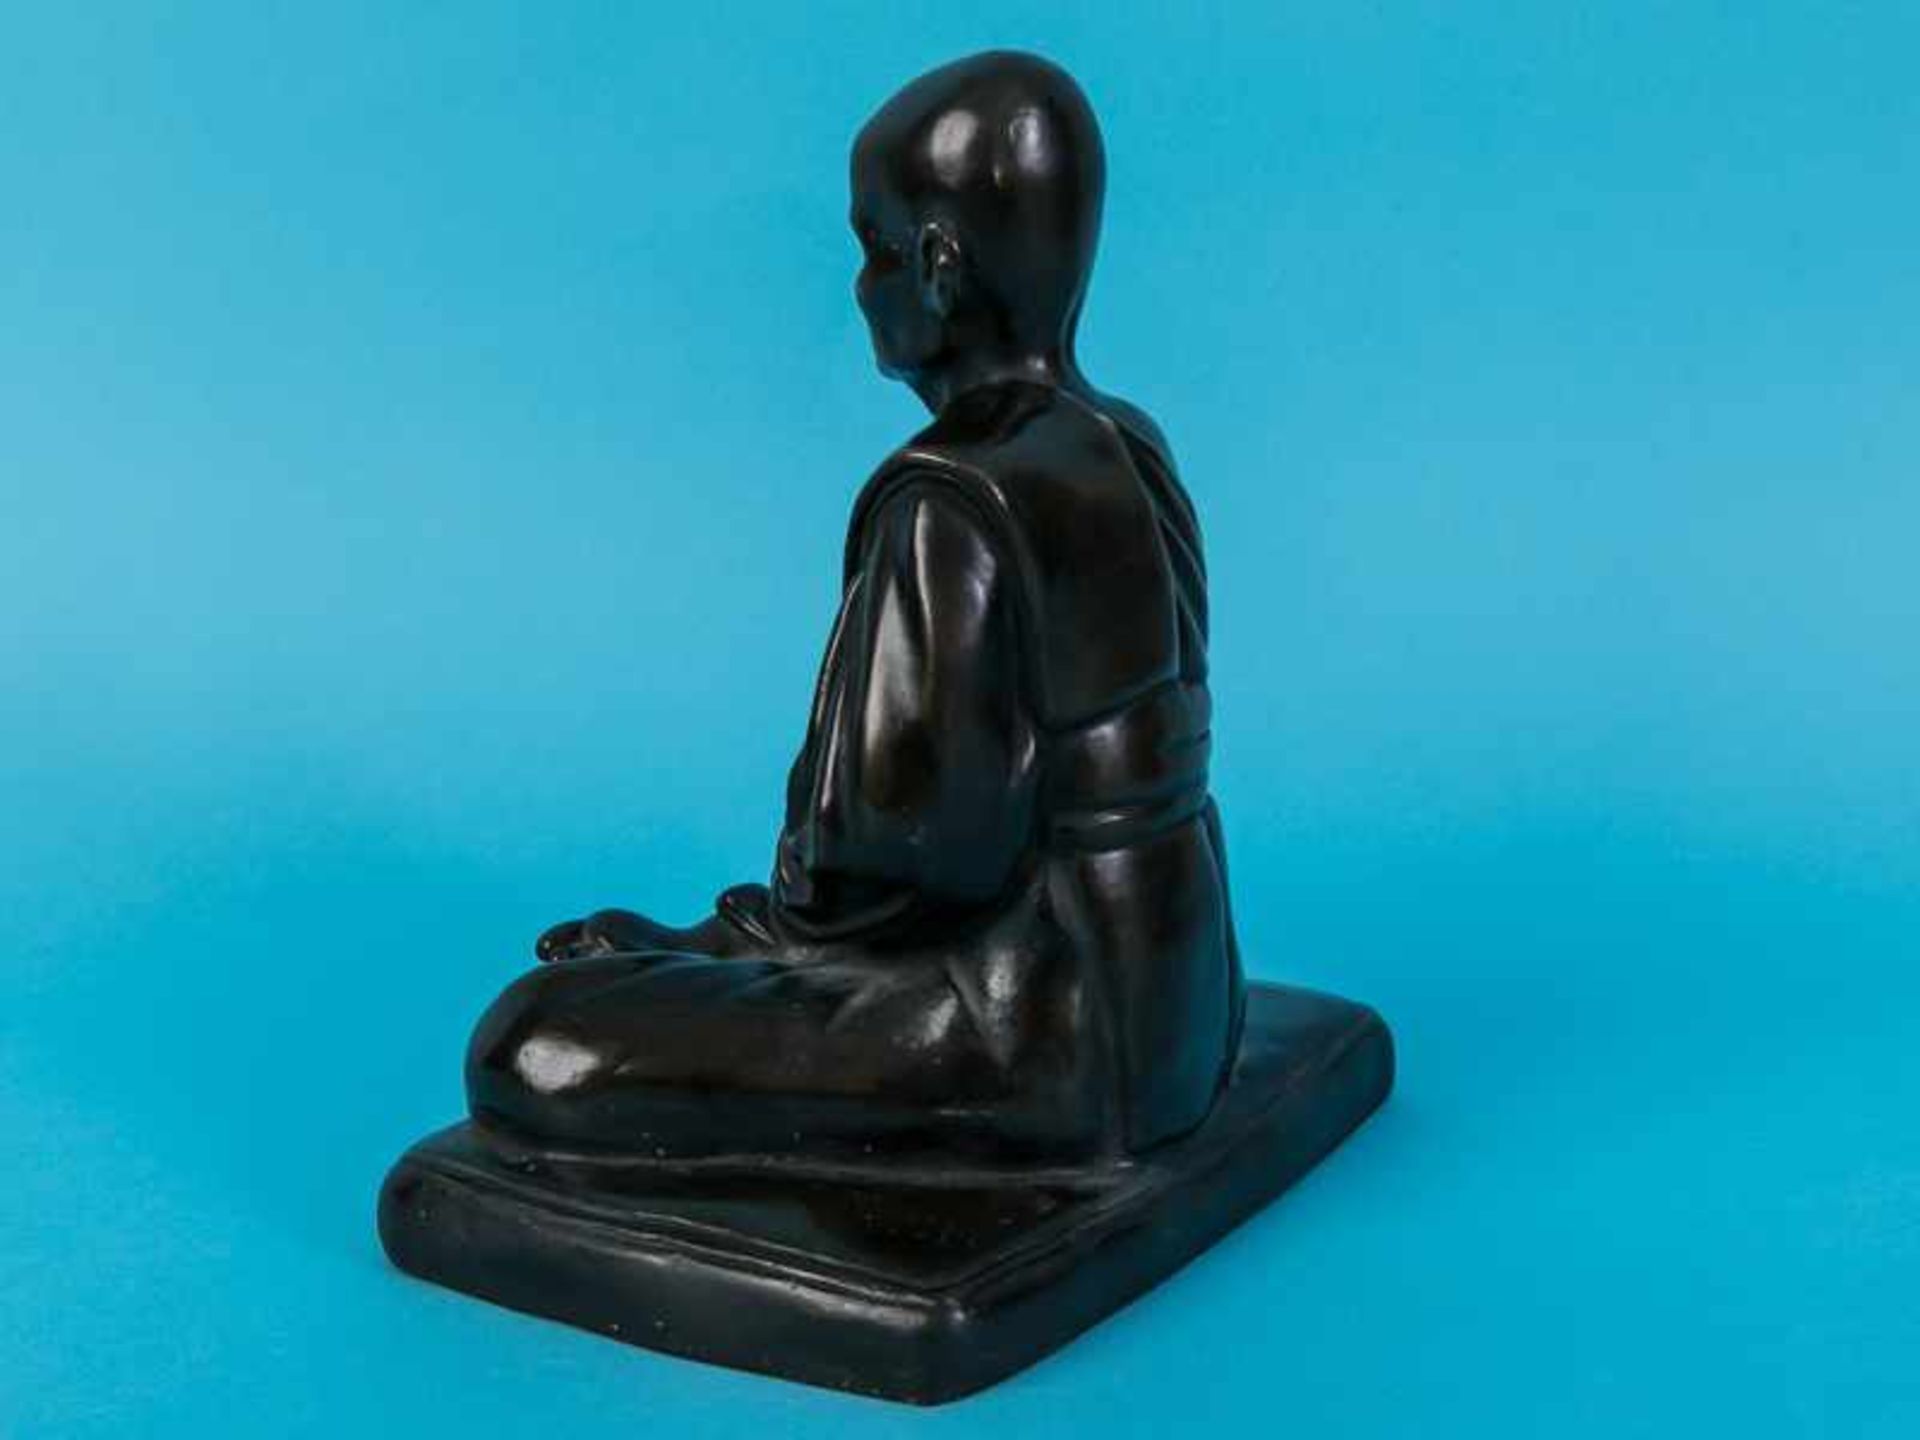 Figurenplastik "Buddhistischer Mönch", Thailand, 19./20. Jh. Bronze, dunkelbraunfarbig patiniert; - Image 8 of 9